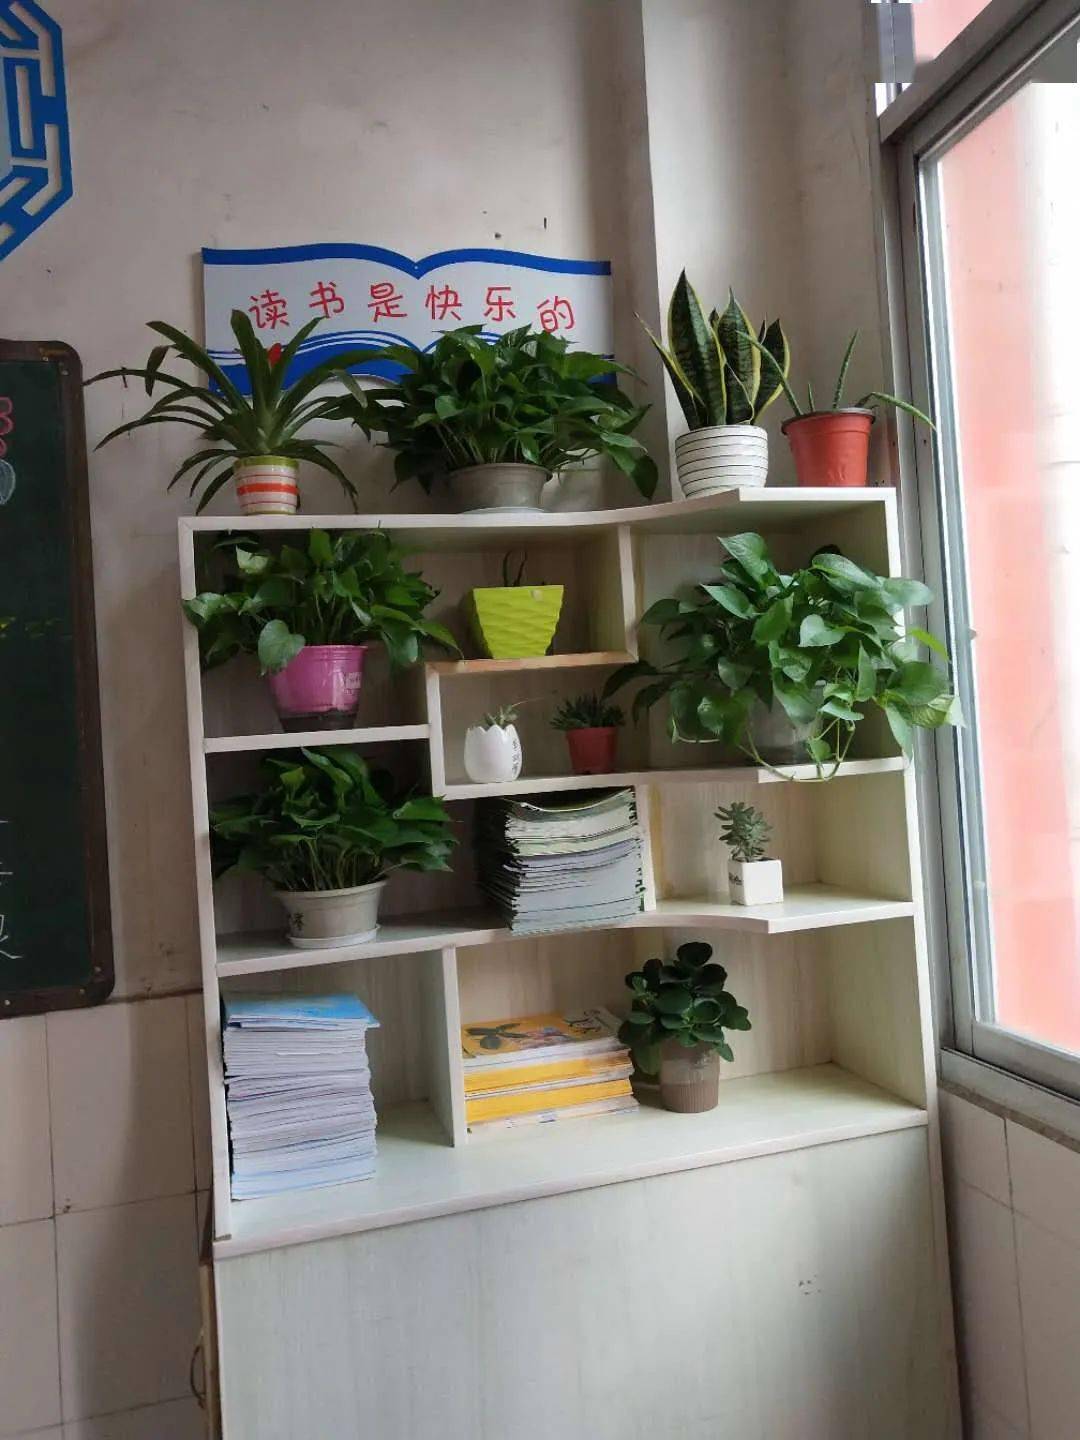 图书角走进教室,浓郁的文化氛围扑面而来,书架上摆放的盆栽绿意盎然